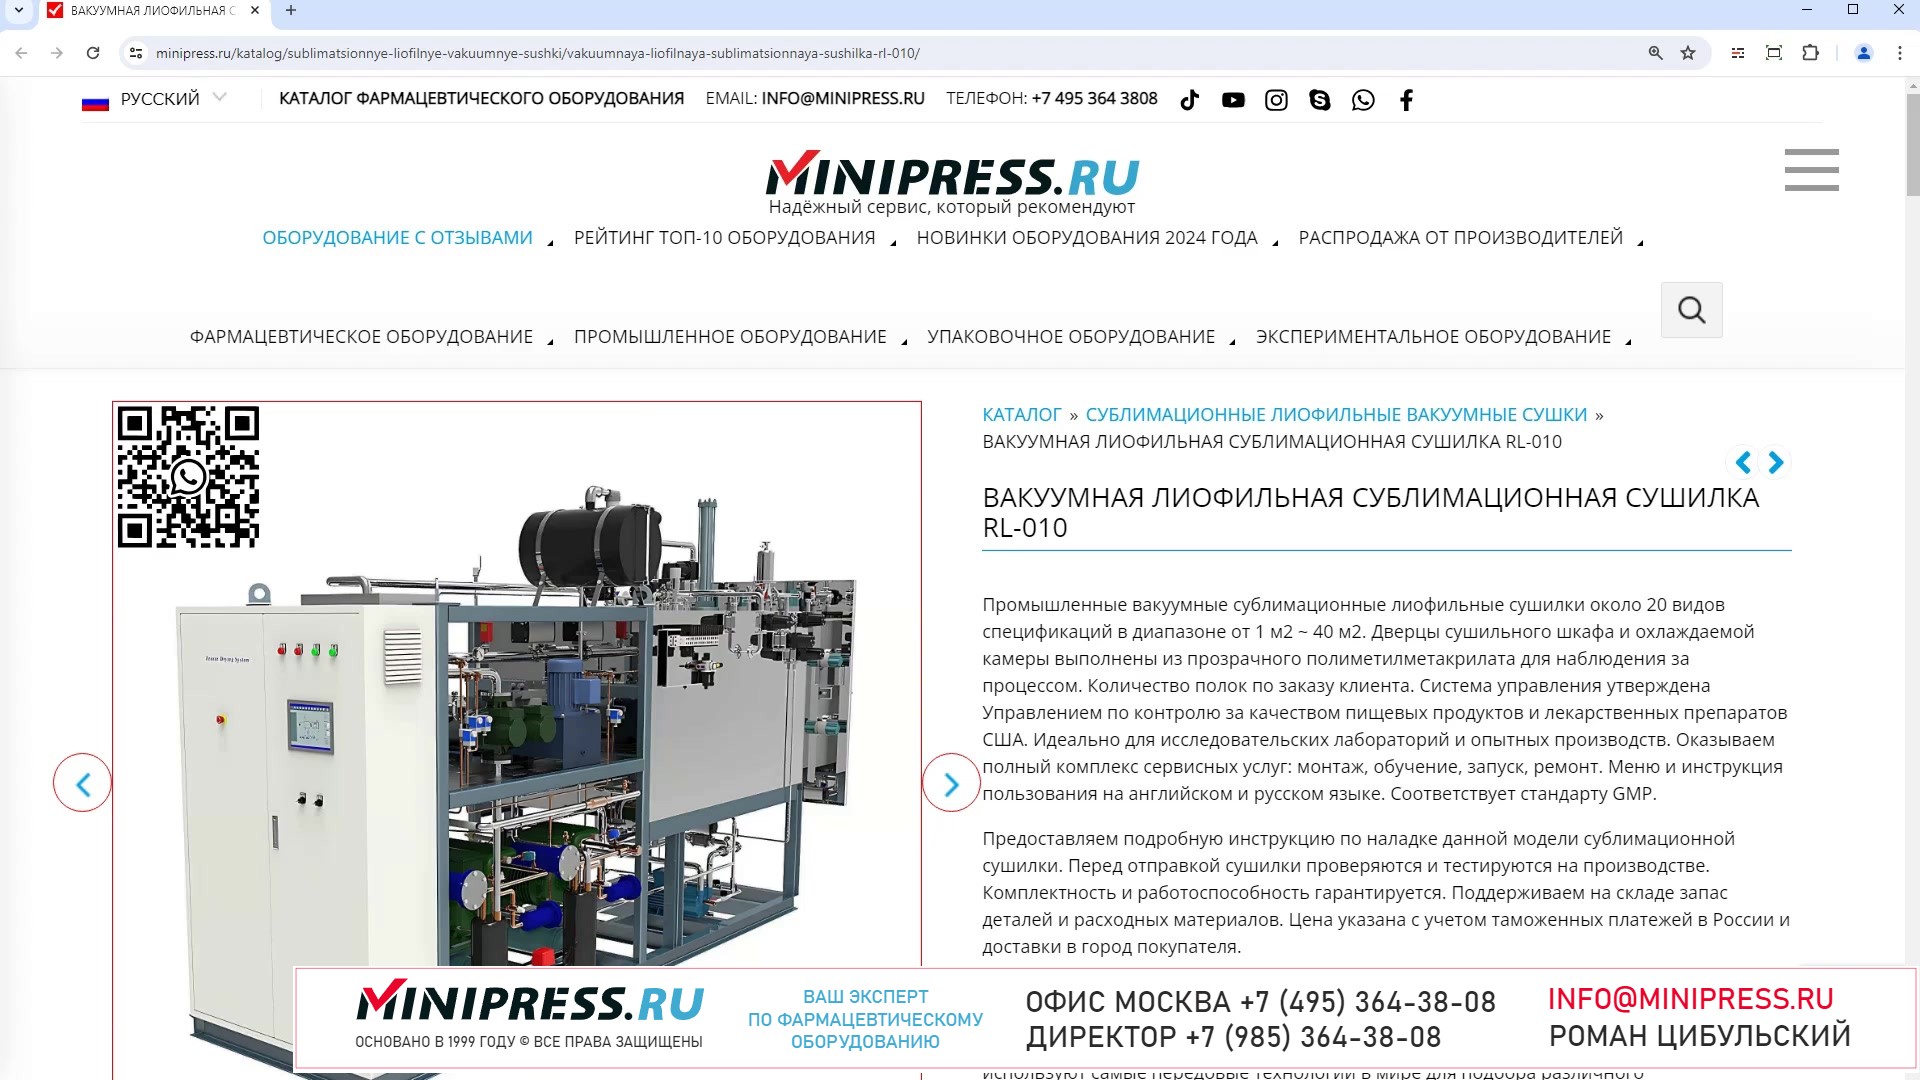 Minipress.ru Вакуумная лиофильная сублимационная сушилка RL-010